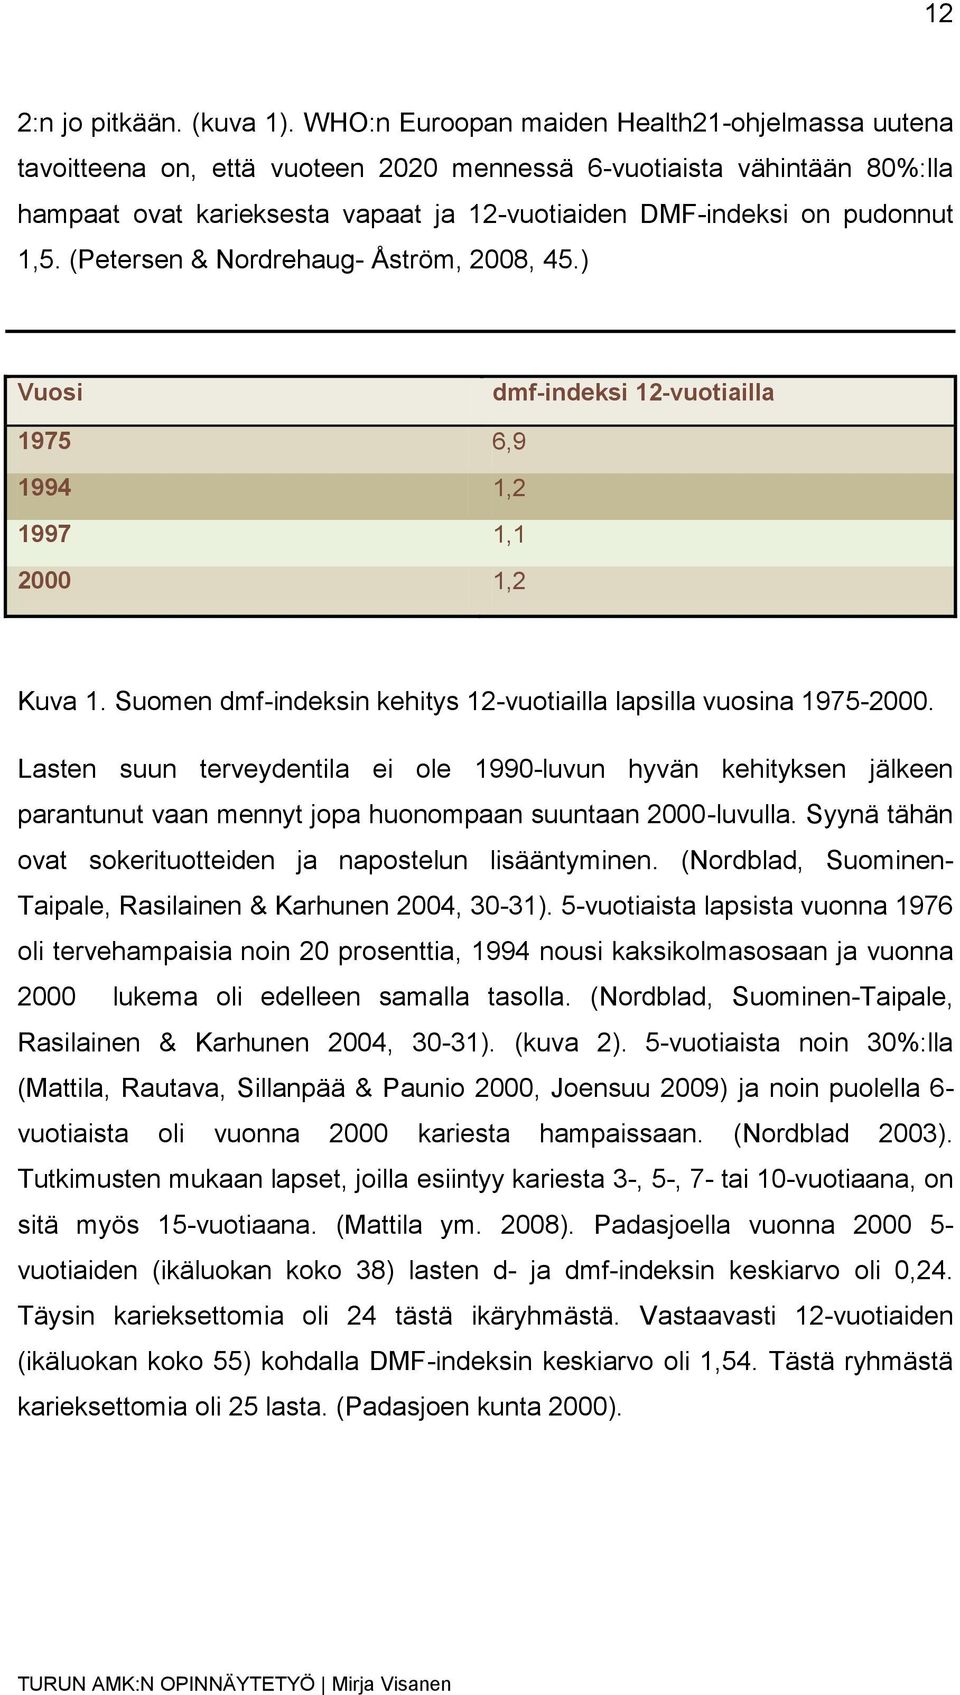 (Petersen & Nordrehaug- Åström, 2008, 45.) Vuosi dmf-indeksi 12-vuotiailla 1975 6,9 1994 1,2 1997 1,1 2000 1,2 Kuva 1. Suomen dmf-indeksin kehitys 12-vuotiailla lapsilla vuosina 1975-2000.